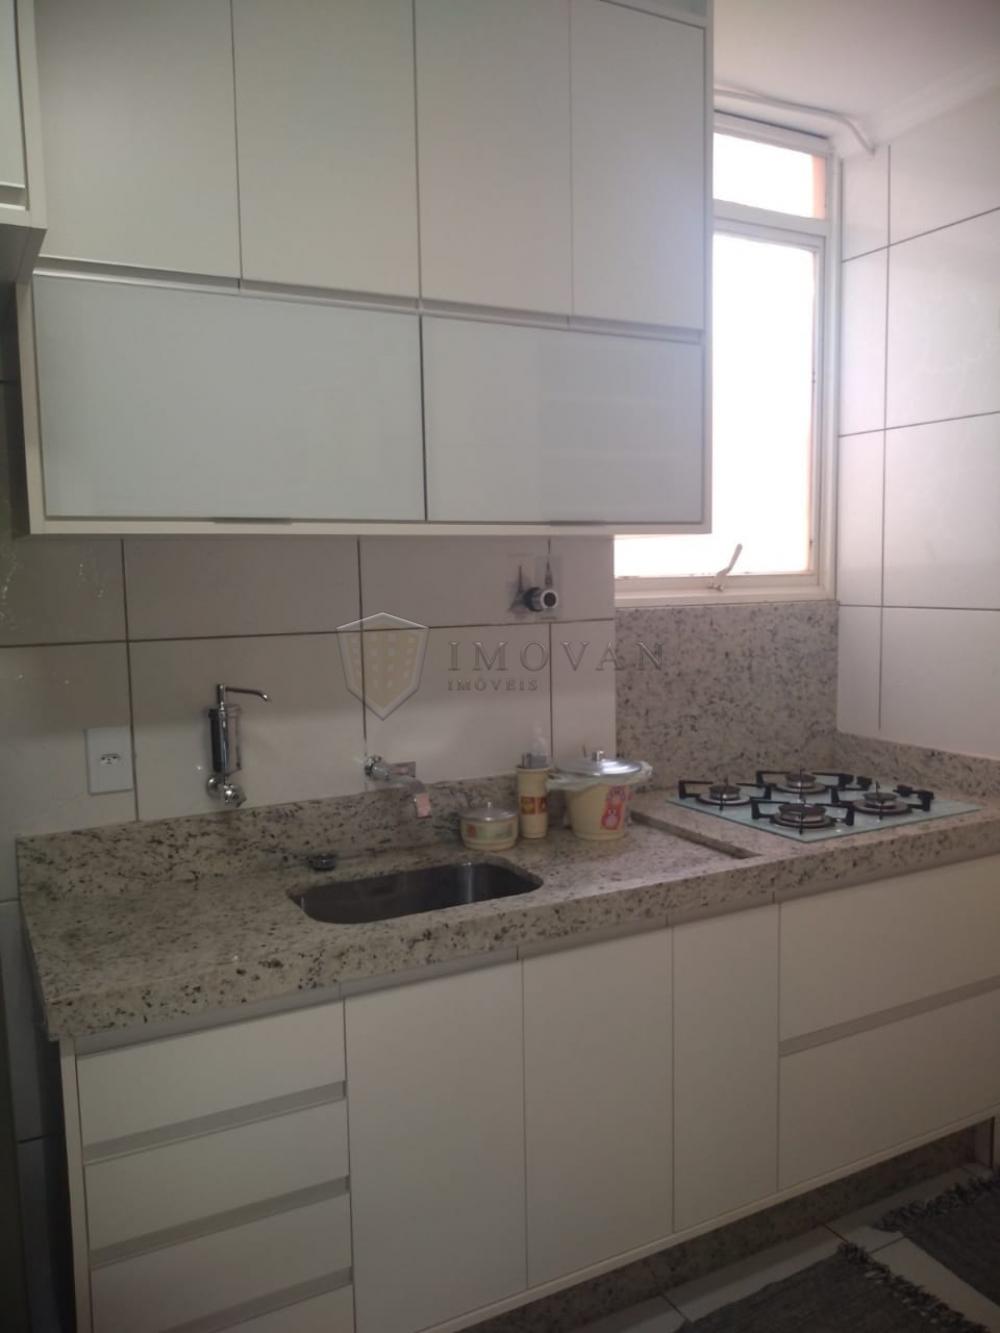 Comprar Apartamento / Padrão em Ribeirão Preto R$ 240.000,00 - Foto 7